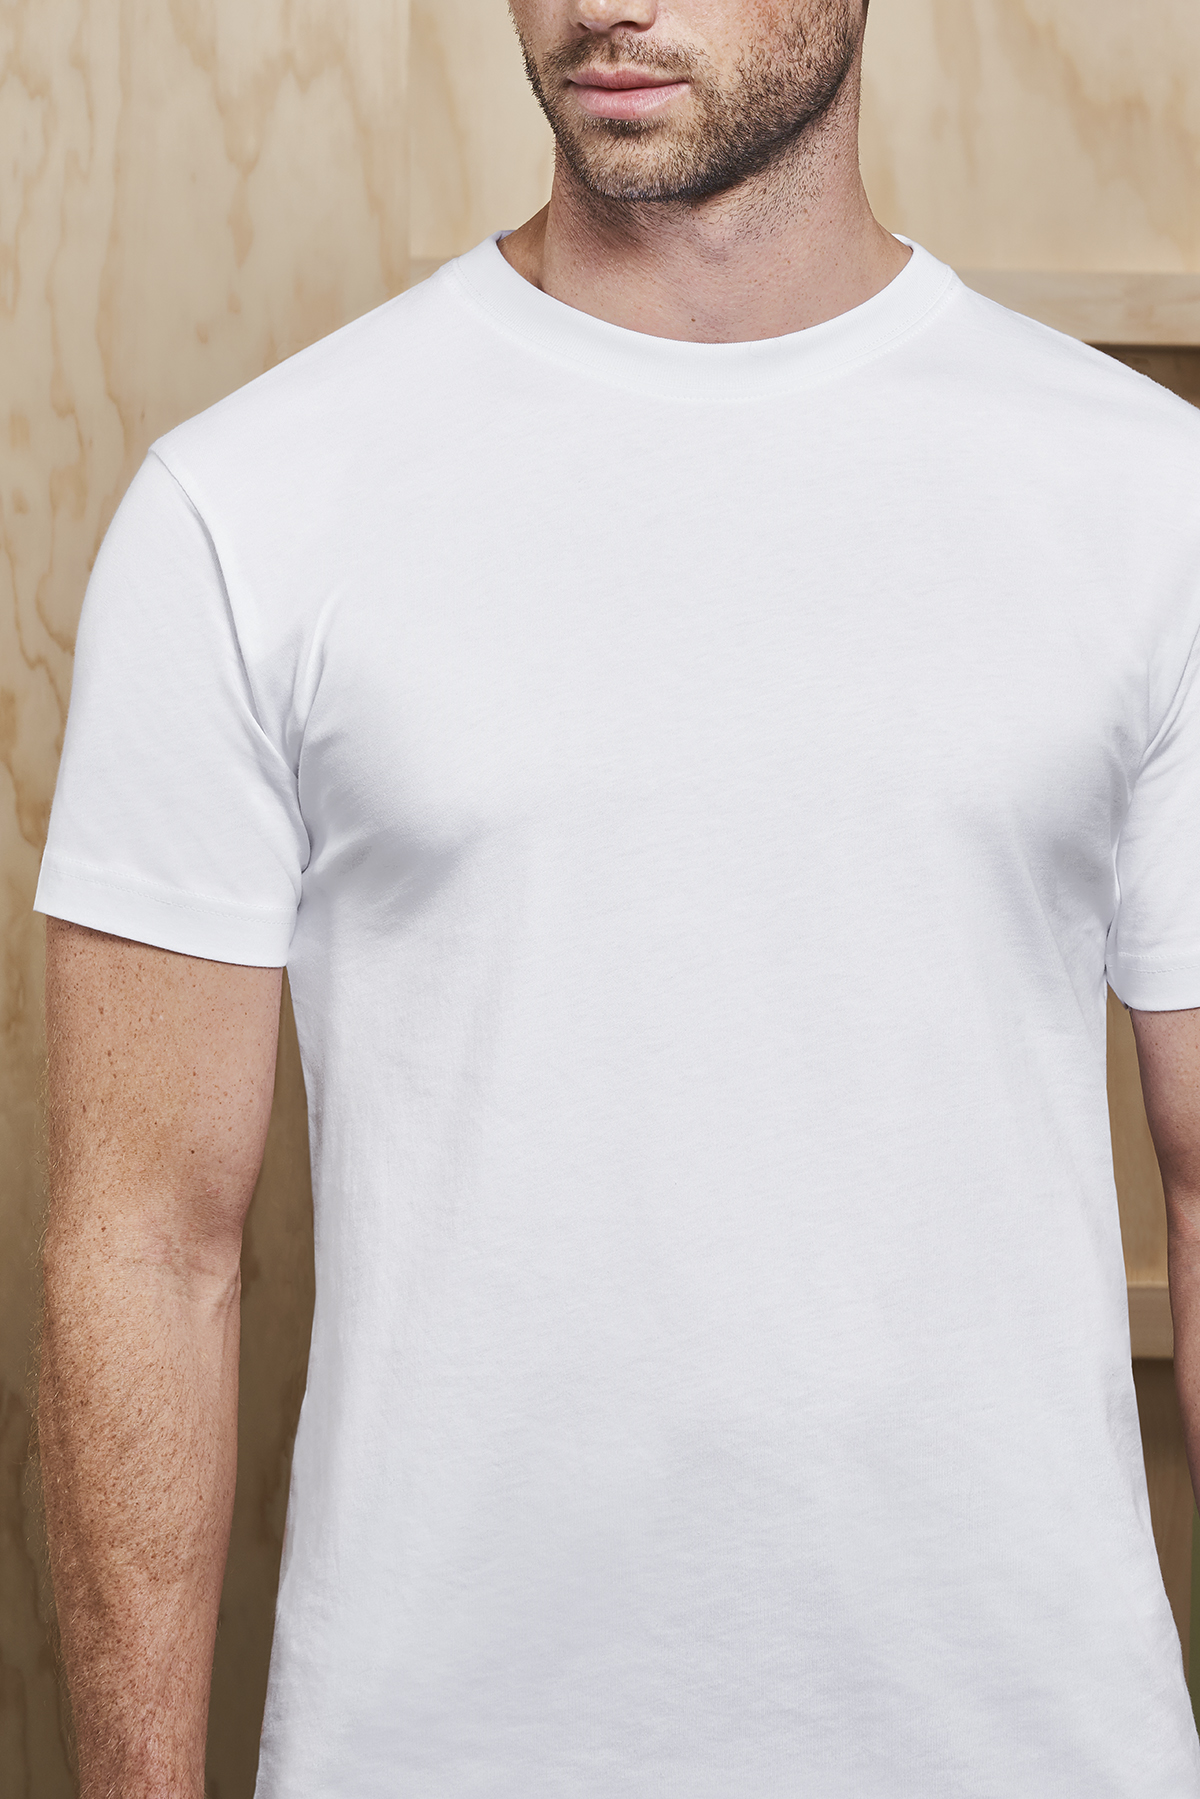 ID 0510 T-shirt Køb Online - Tekstil Tryk